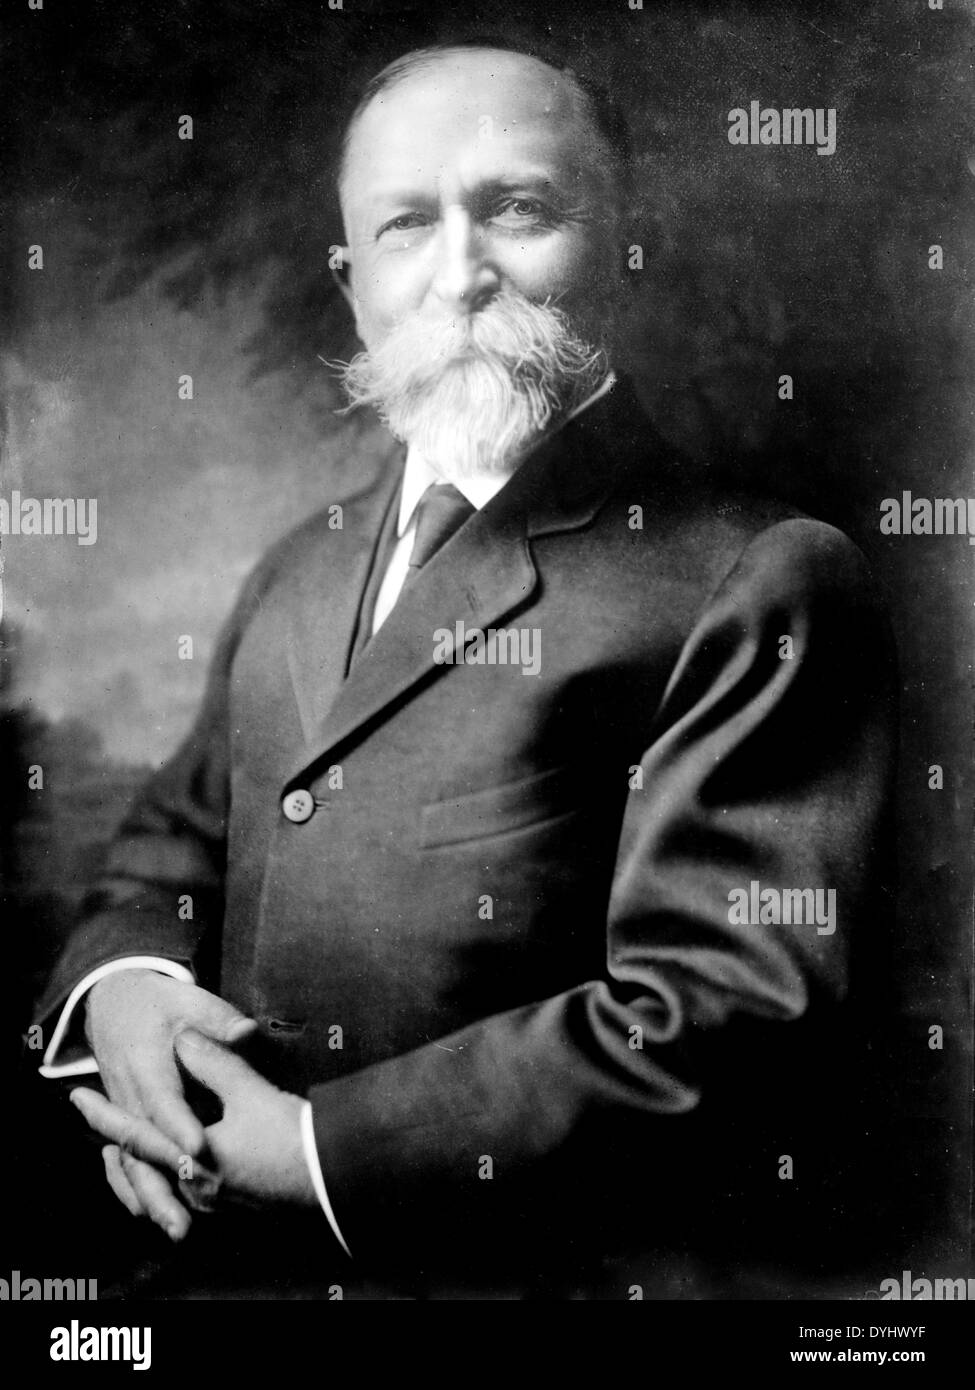 JOHN HARVEY KELLOG (1852 – 1943), US-amerikanischer Arzt und Miterfinder des Frühstücks-Cerealien, die seinen Namen trägt. Hier etwa 1913 Stockfoto